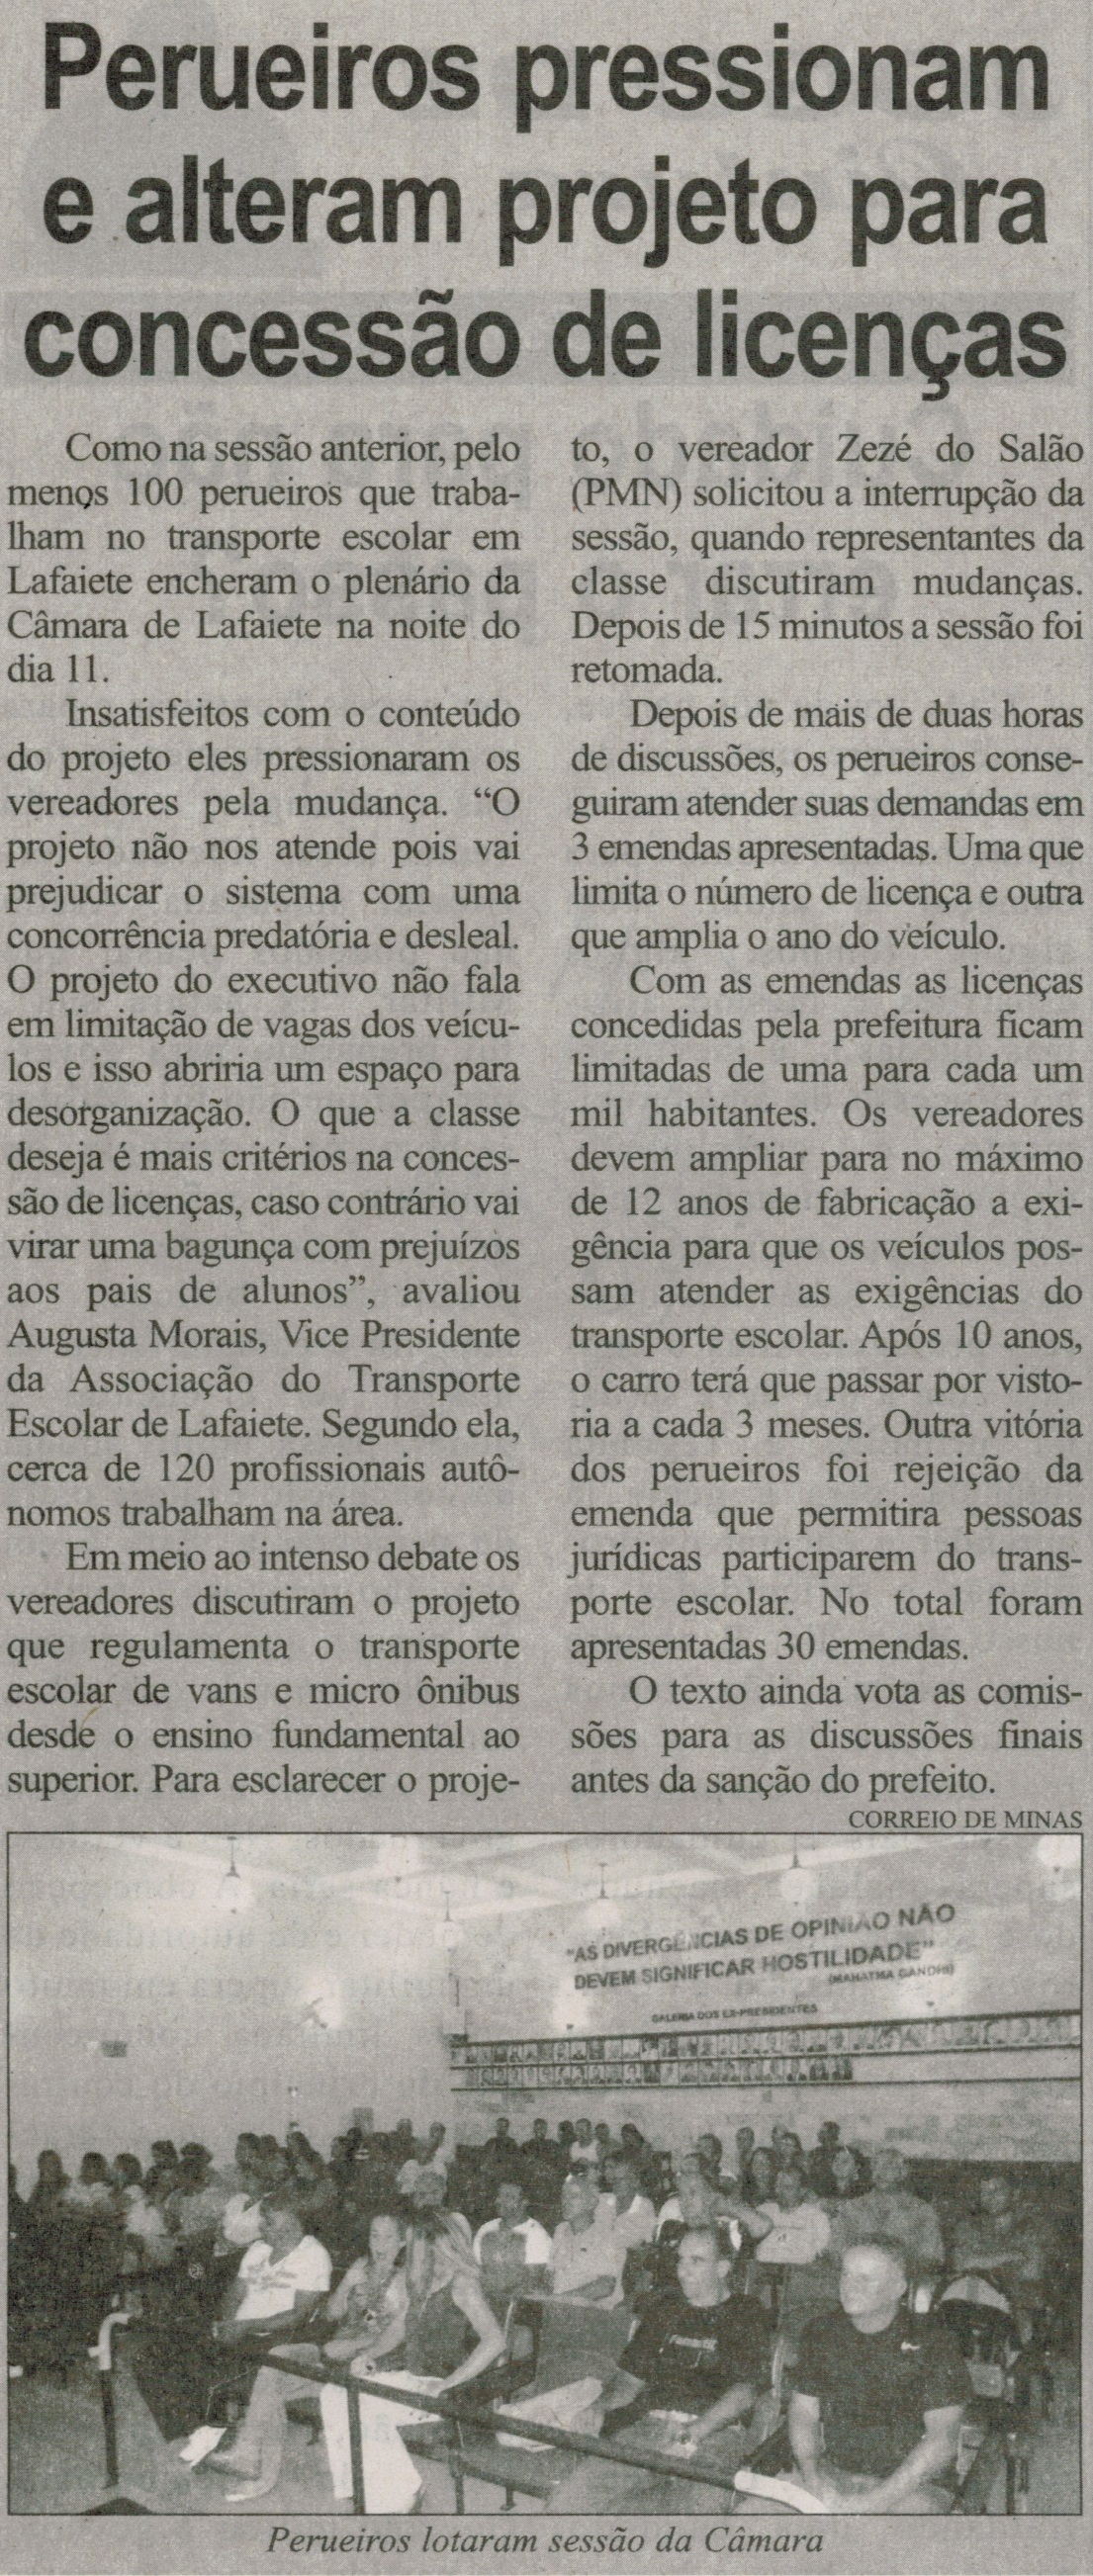 Perueiros pressionam e alteram projeto para concessão de licenças. Correio de Minas, Conselheiro Lafaiete,  14 fev. 2015, p. 6.